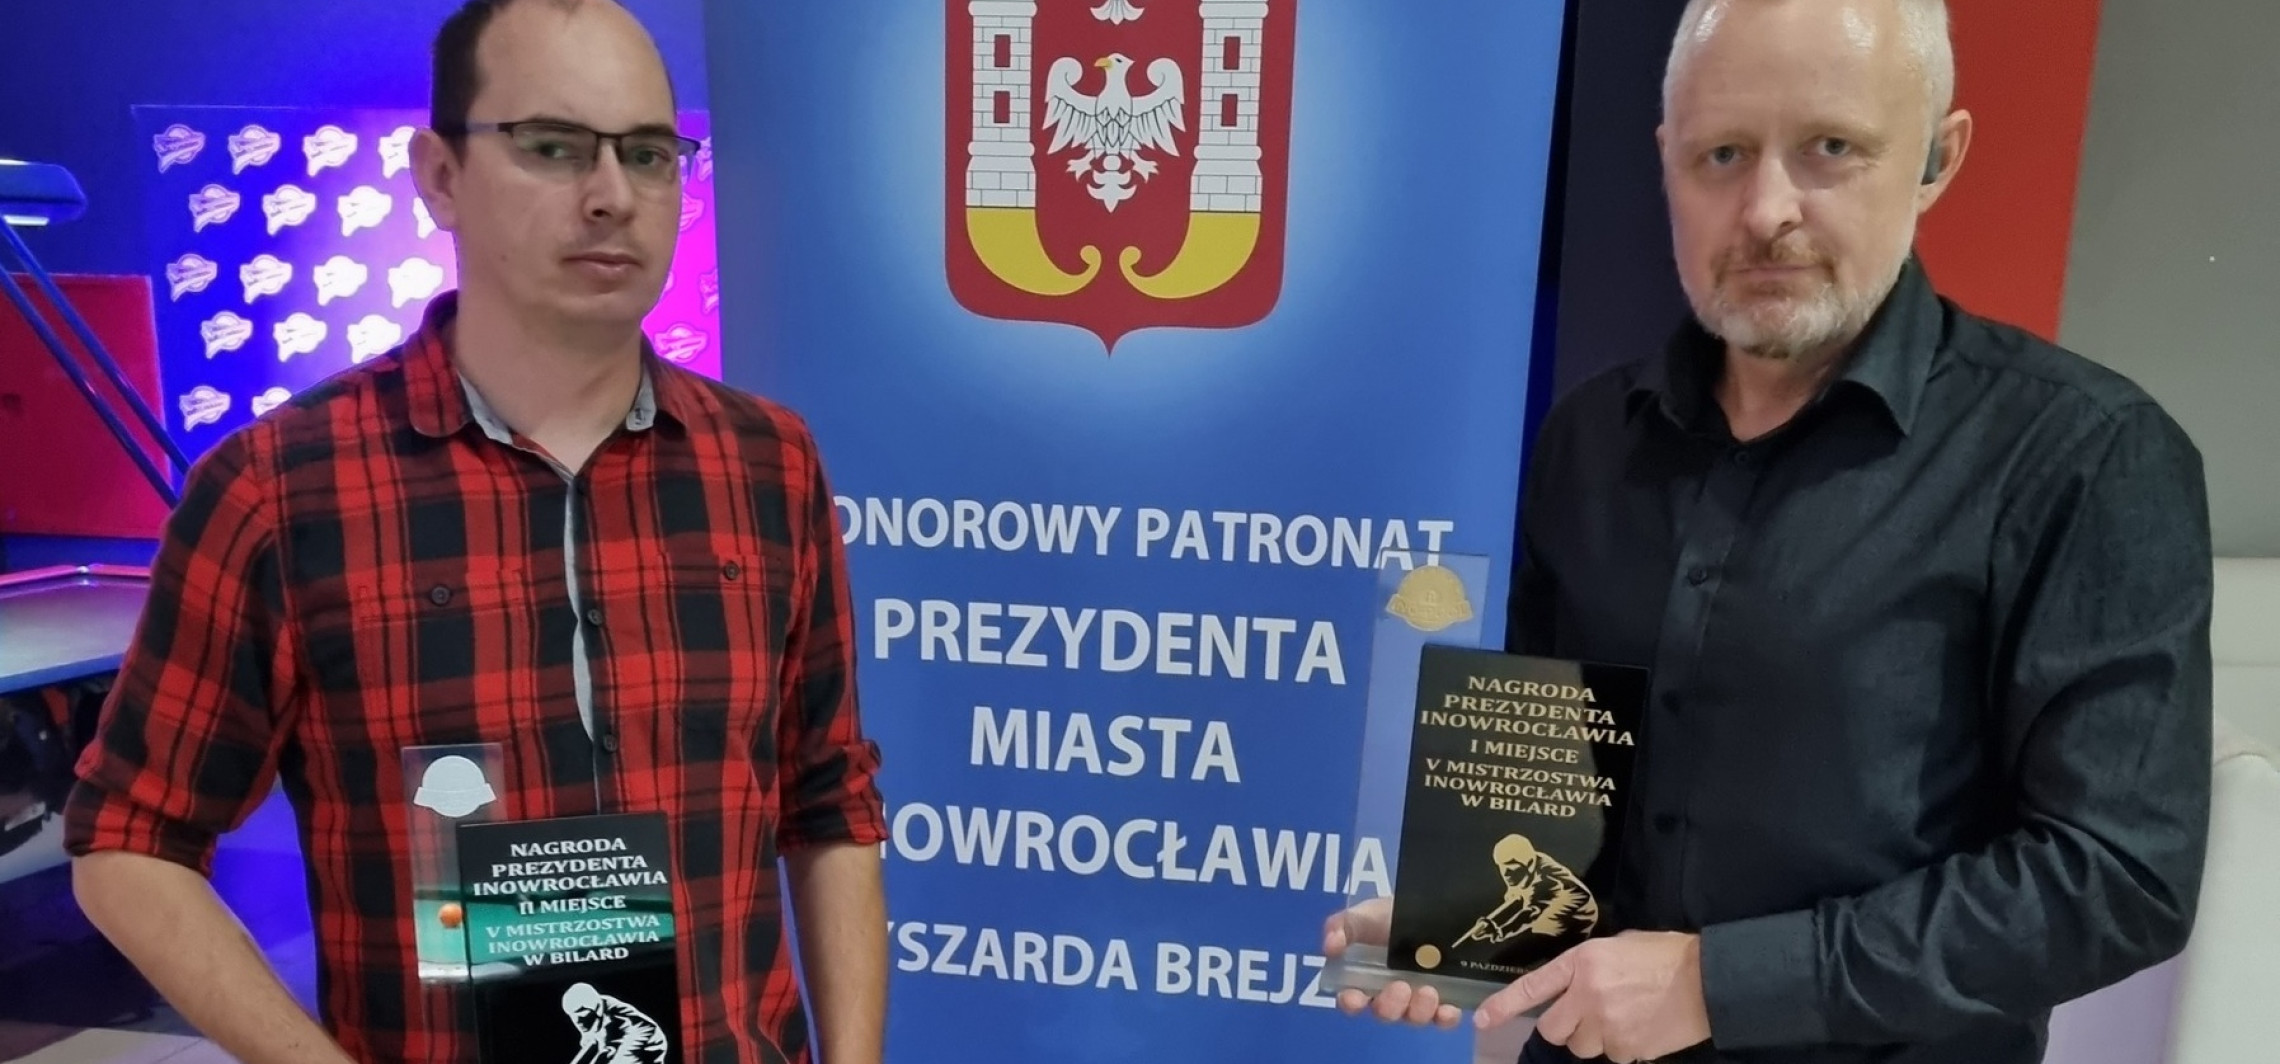 Inowrocław - Znamy bilardowych mistrzów Inowrocławia